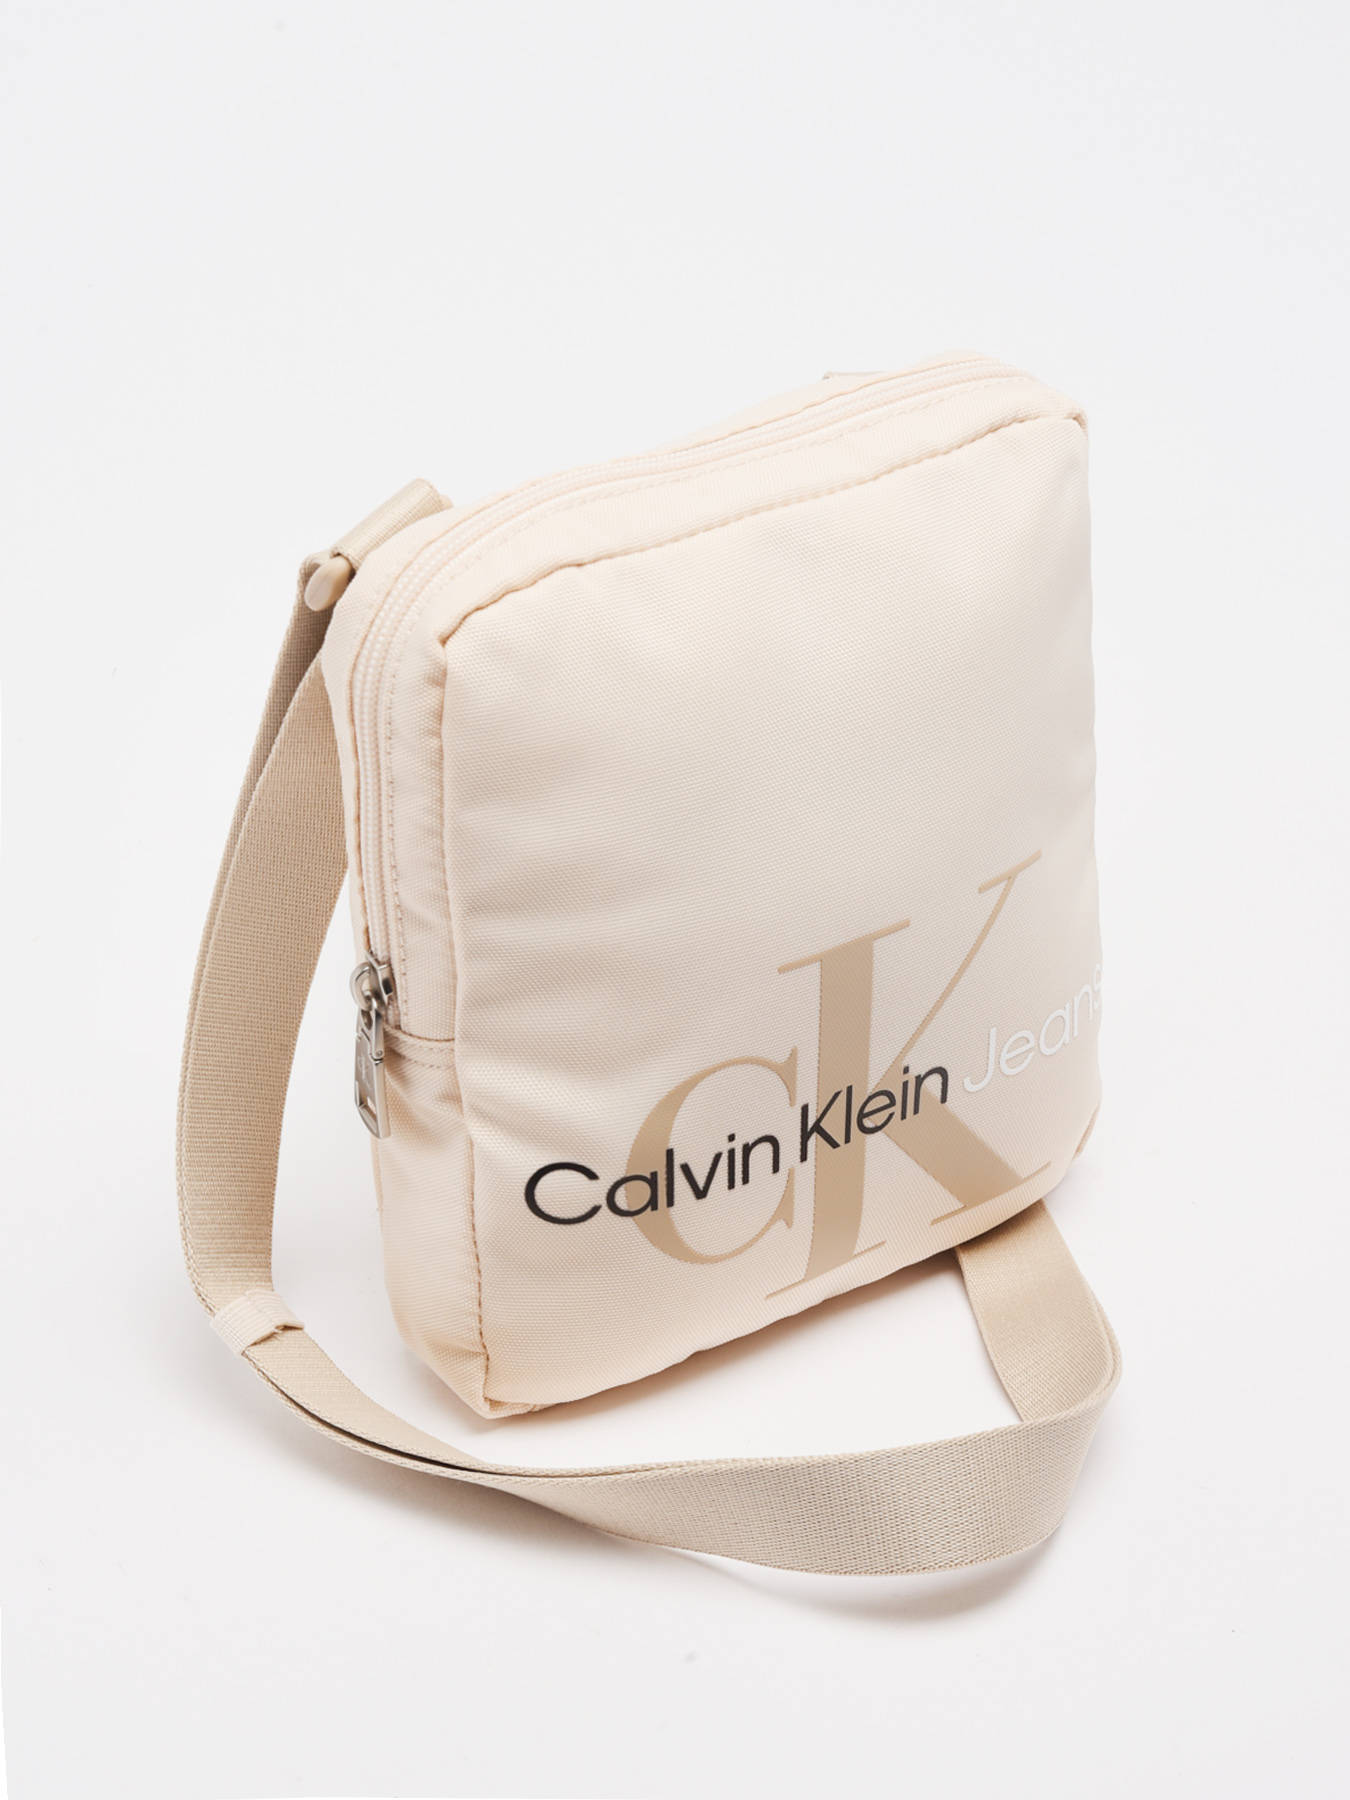 【Auffüllen】 Promo: -50%] Calvin Klein Jeans Crossbody K50K509357 bag best prices 